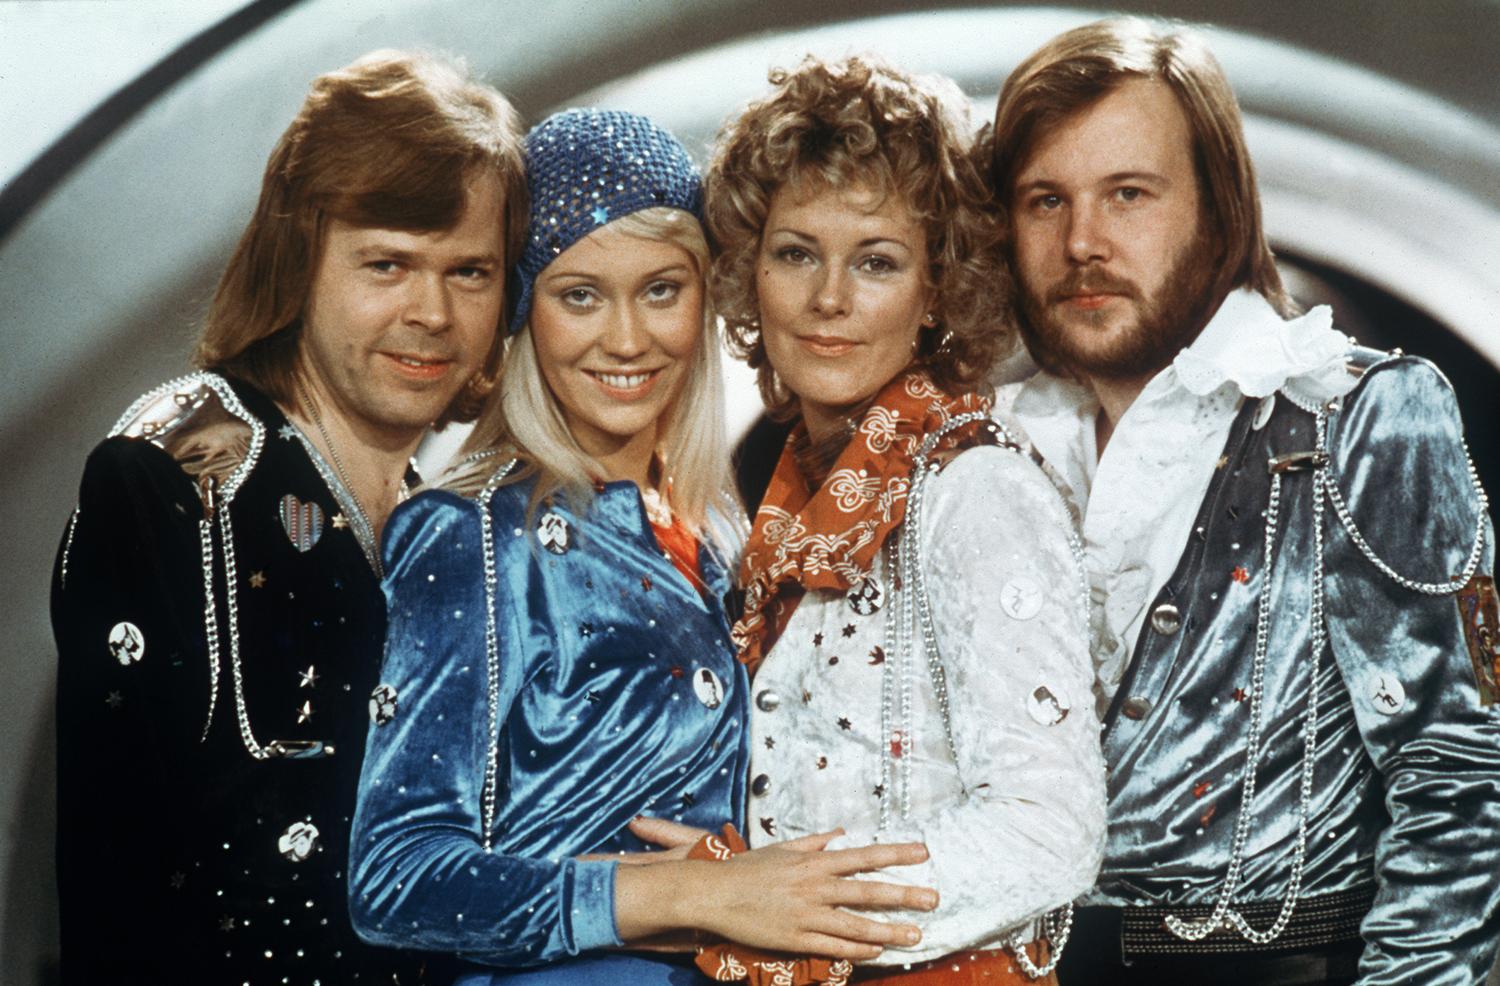 Le légendaire groupe suédois Abba composé de Bjorn Ulvaeus, Agnetha Faltskog, Anni-frid Lyngstad et Benny Andersson, le 9 février 1974 à l'Eurovision. [LINDEBORG - SCANPIX SWEDEN / AFP]